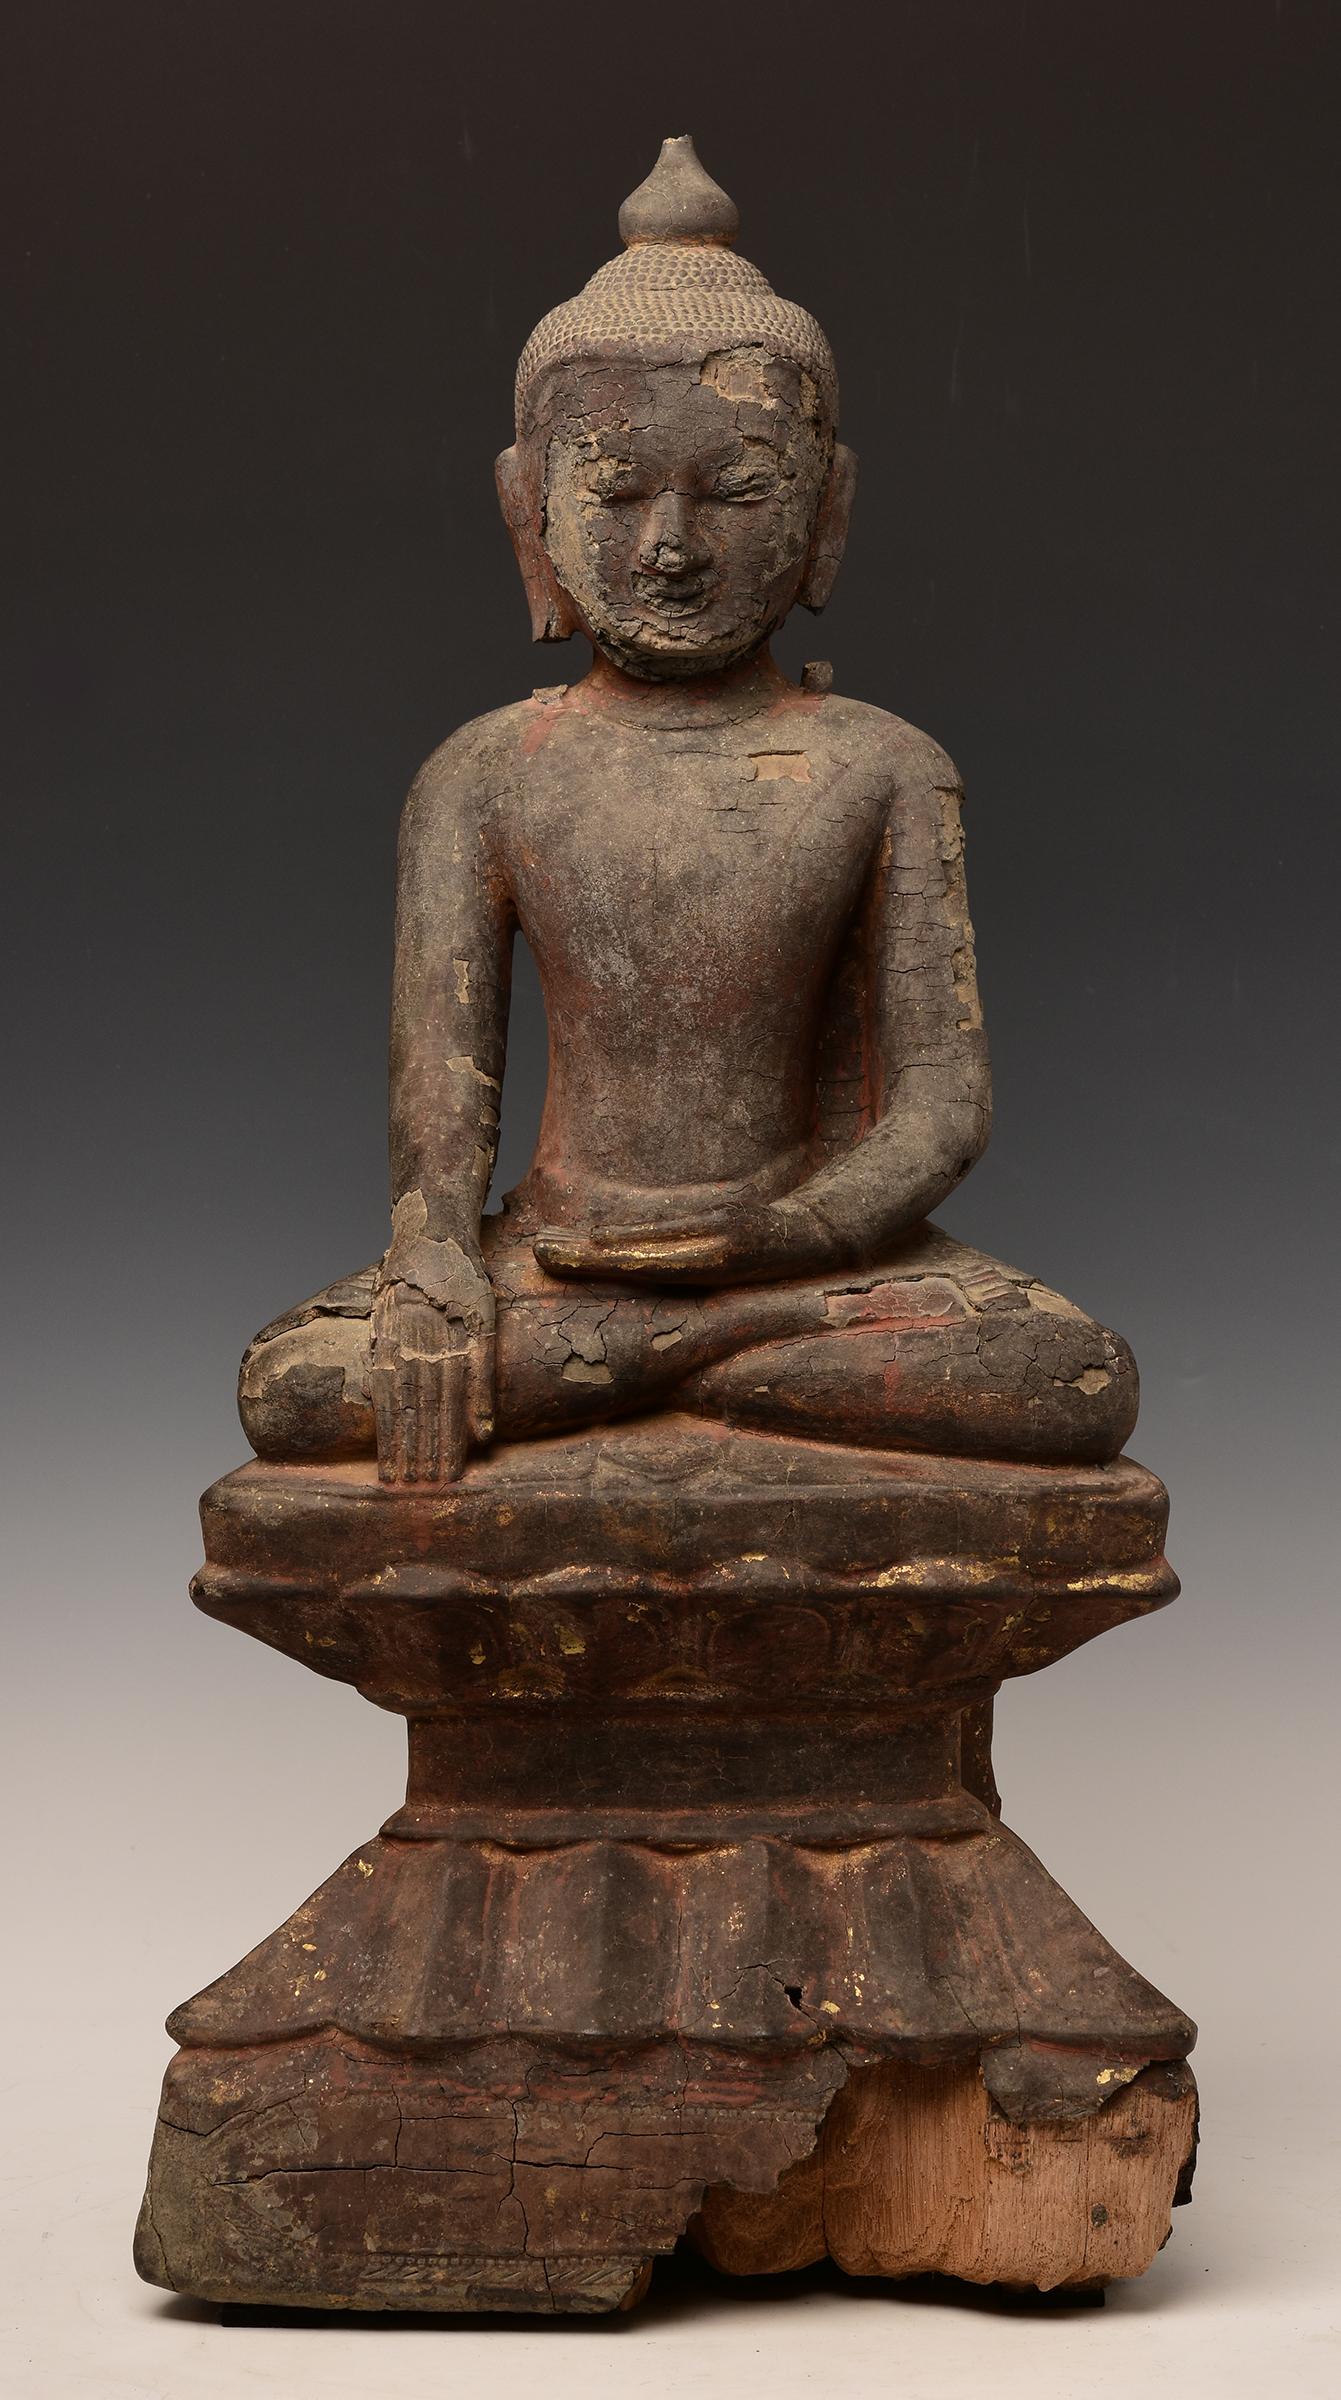 Bouddha birman en bois assis en posture Mara Vijaya (appelant la terre à témoin) sur une base.

Âge : Birmanie, période Ava, 15e siècle
Taille : Hauteur 60 C.C.M. / Largeur 29 C.M.
Condition : Intact avec l'état d'origine.

Satisfaction à 100% et